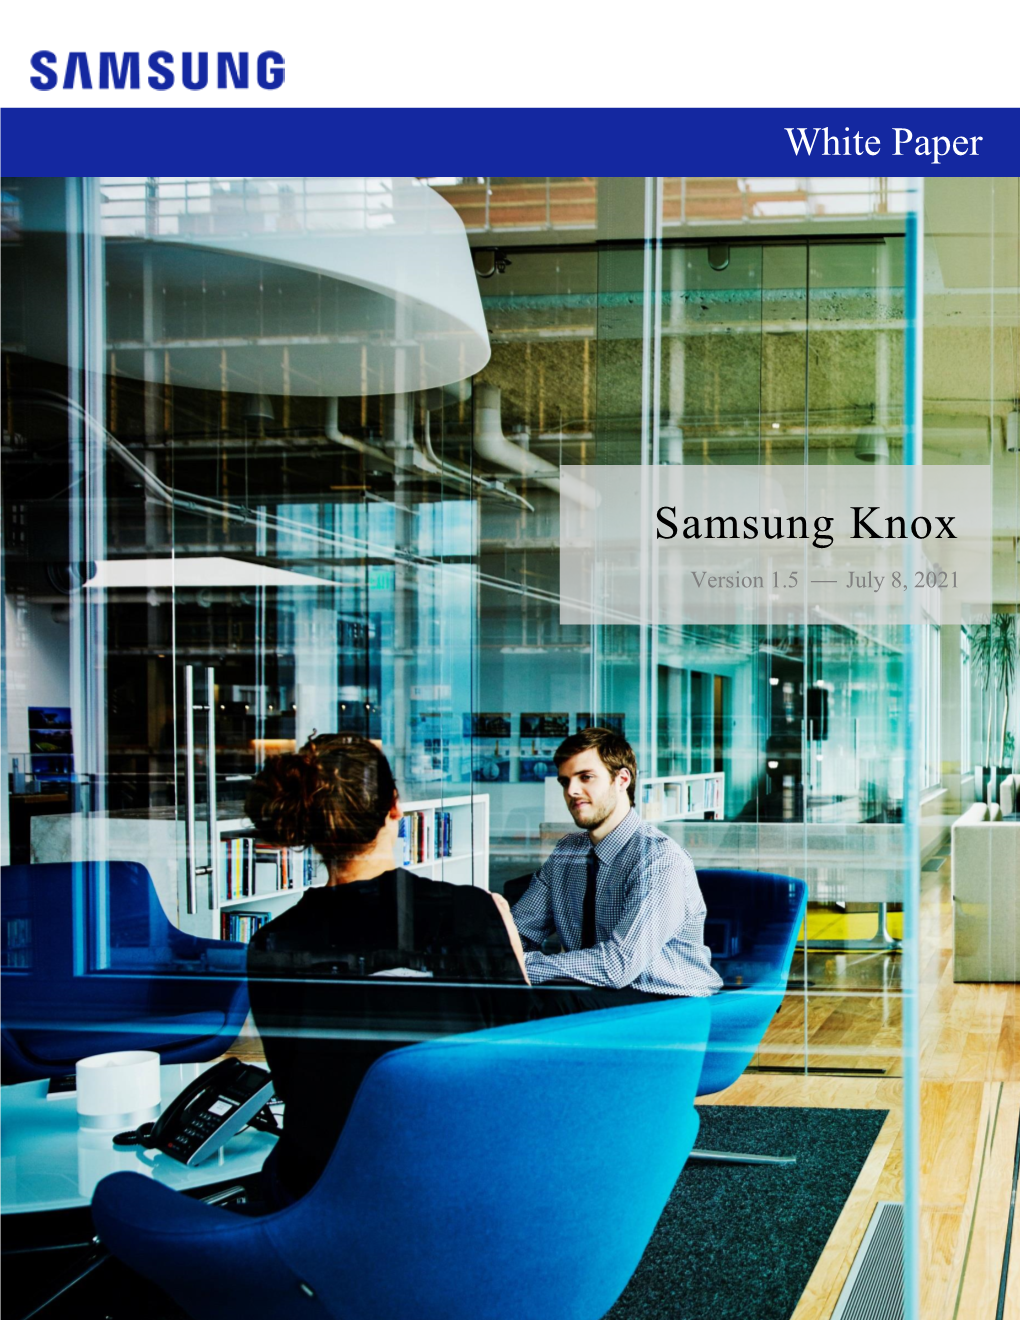 Samsung Knox Platform for Enterprise